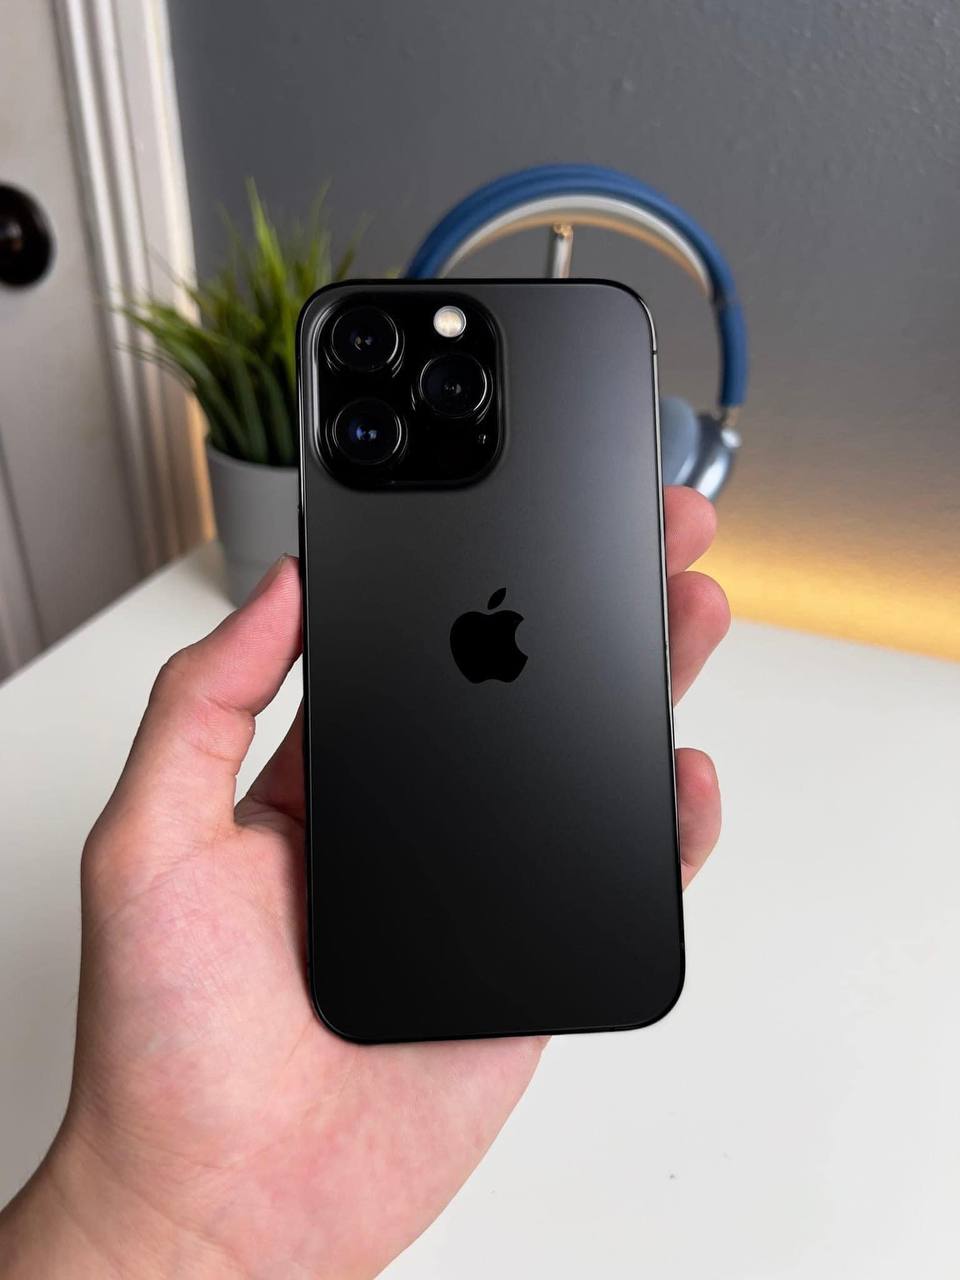 iPhone 14 Pro: Bạn đang tìm kiếm một điện thoại thông minh hoàn hảo cho nhu cầu công việc và giải trí của mình? Hãy xem ngay hình ảnh mới nhất về iPhone 14 Pro và khám phá những tính năng độc đáo, thiết kế tinh tế cùng hiệu suất vượt trội sẽ làm bạn say mê!